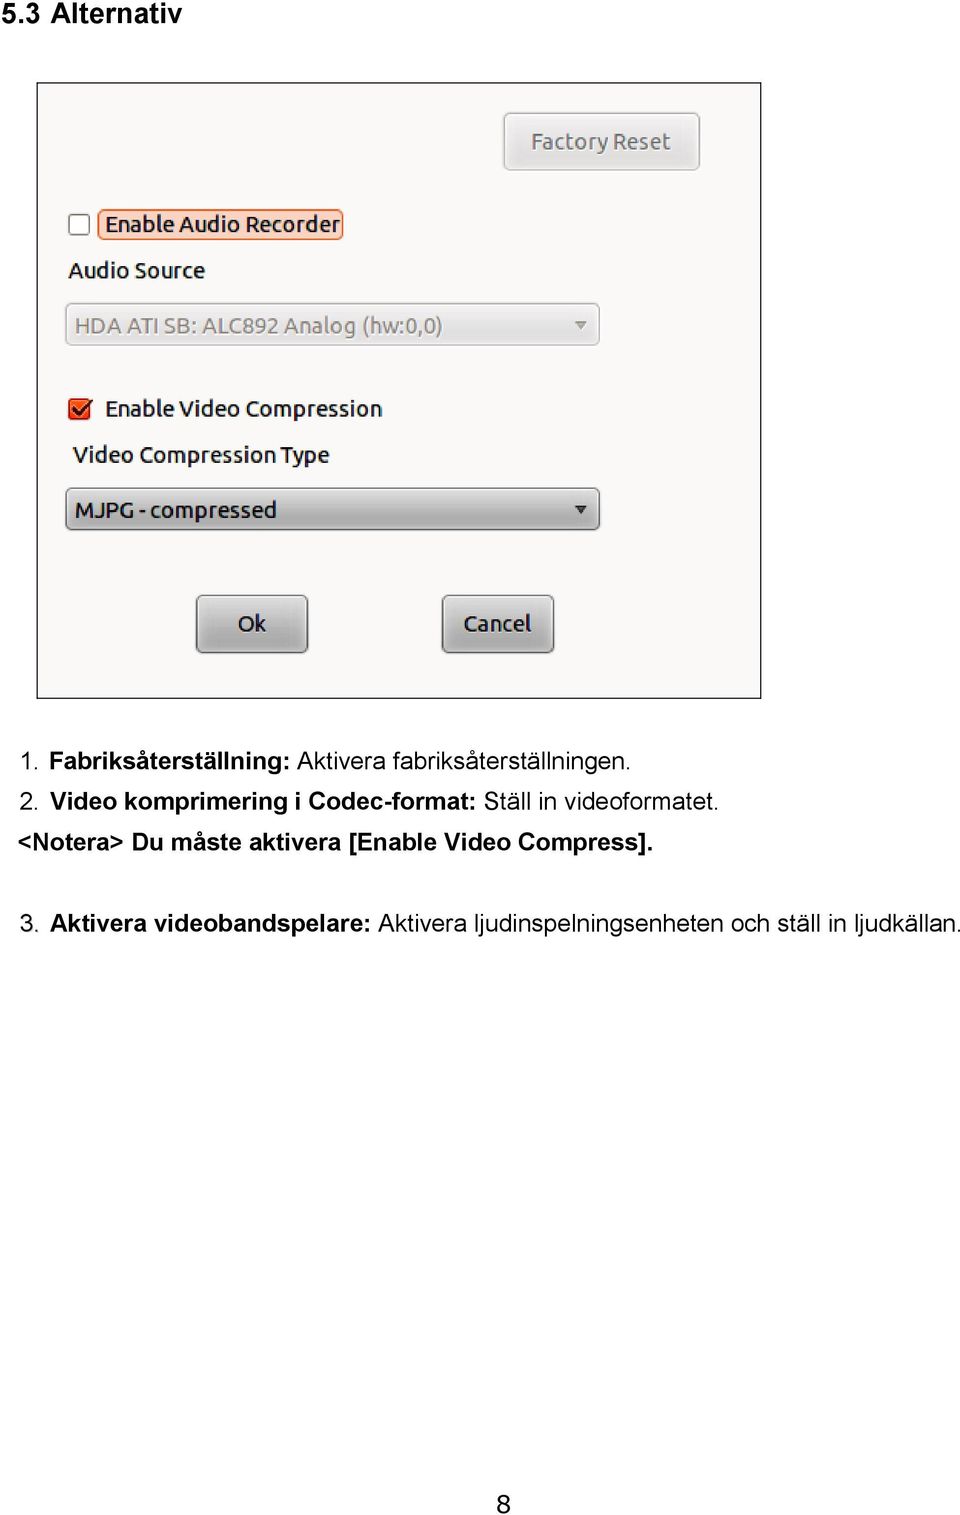 Video komprimering i Codec-format: Ställ in videoformatet.